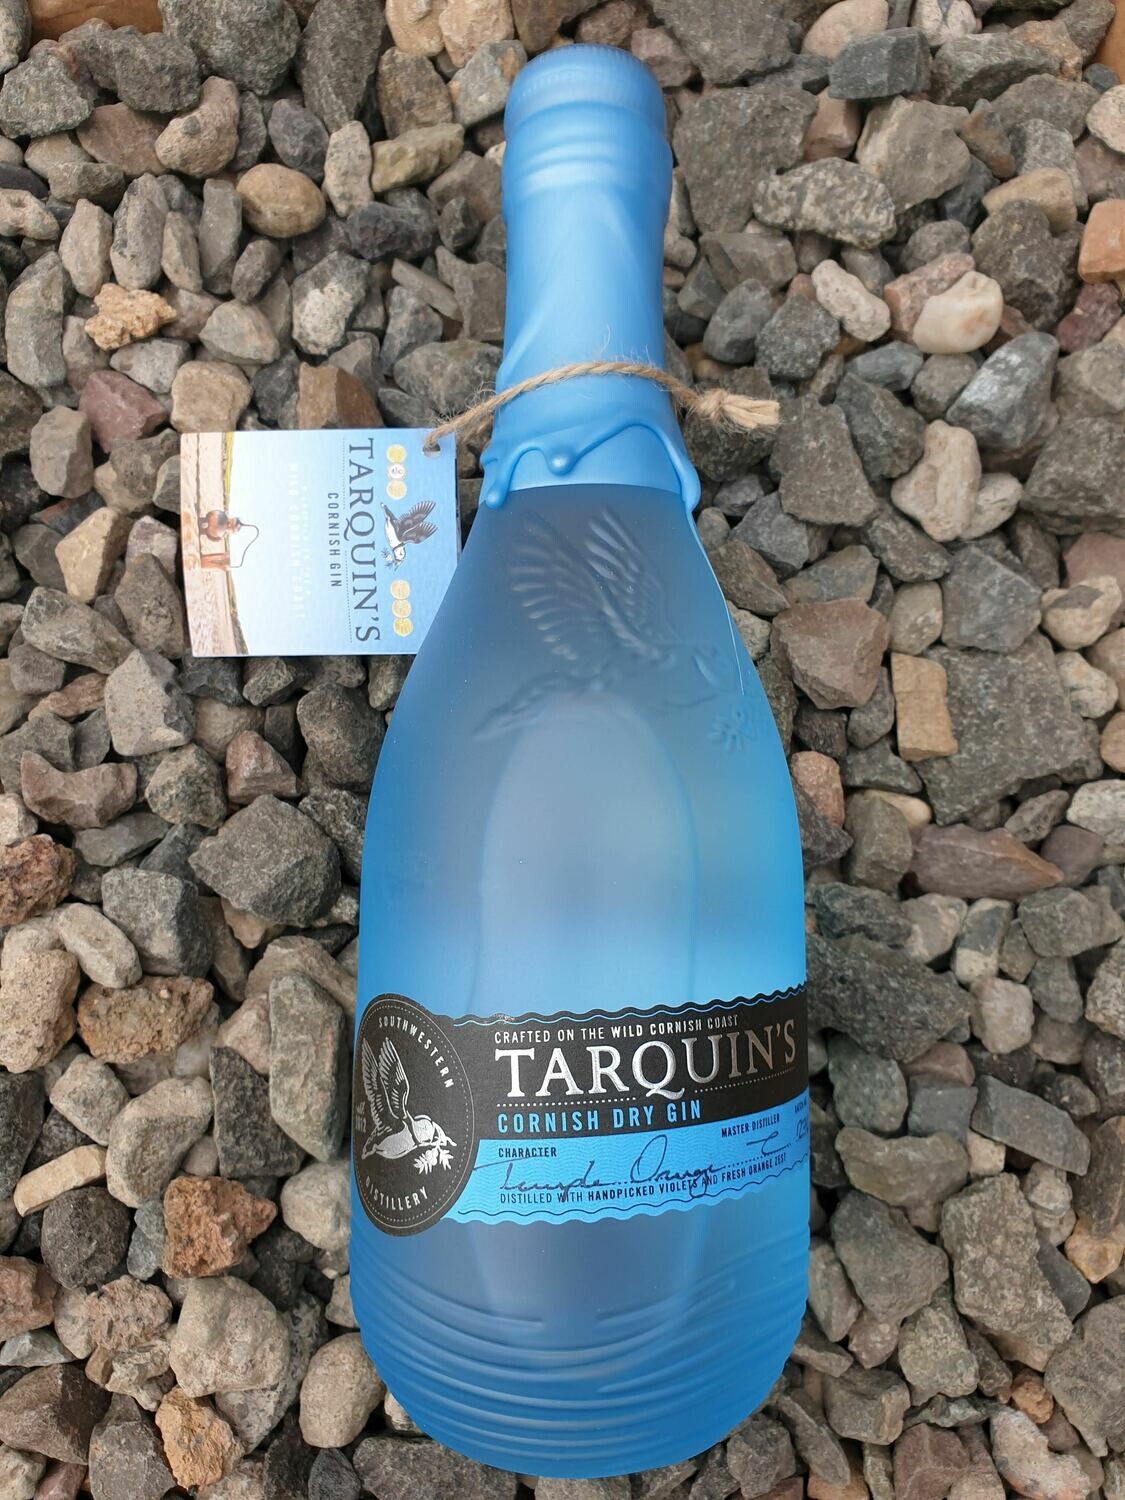 Tarquin's Cornish Dry Gin